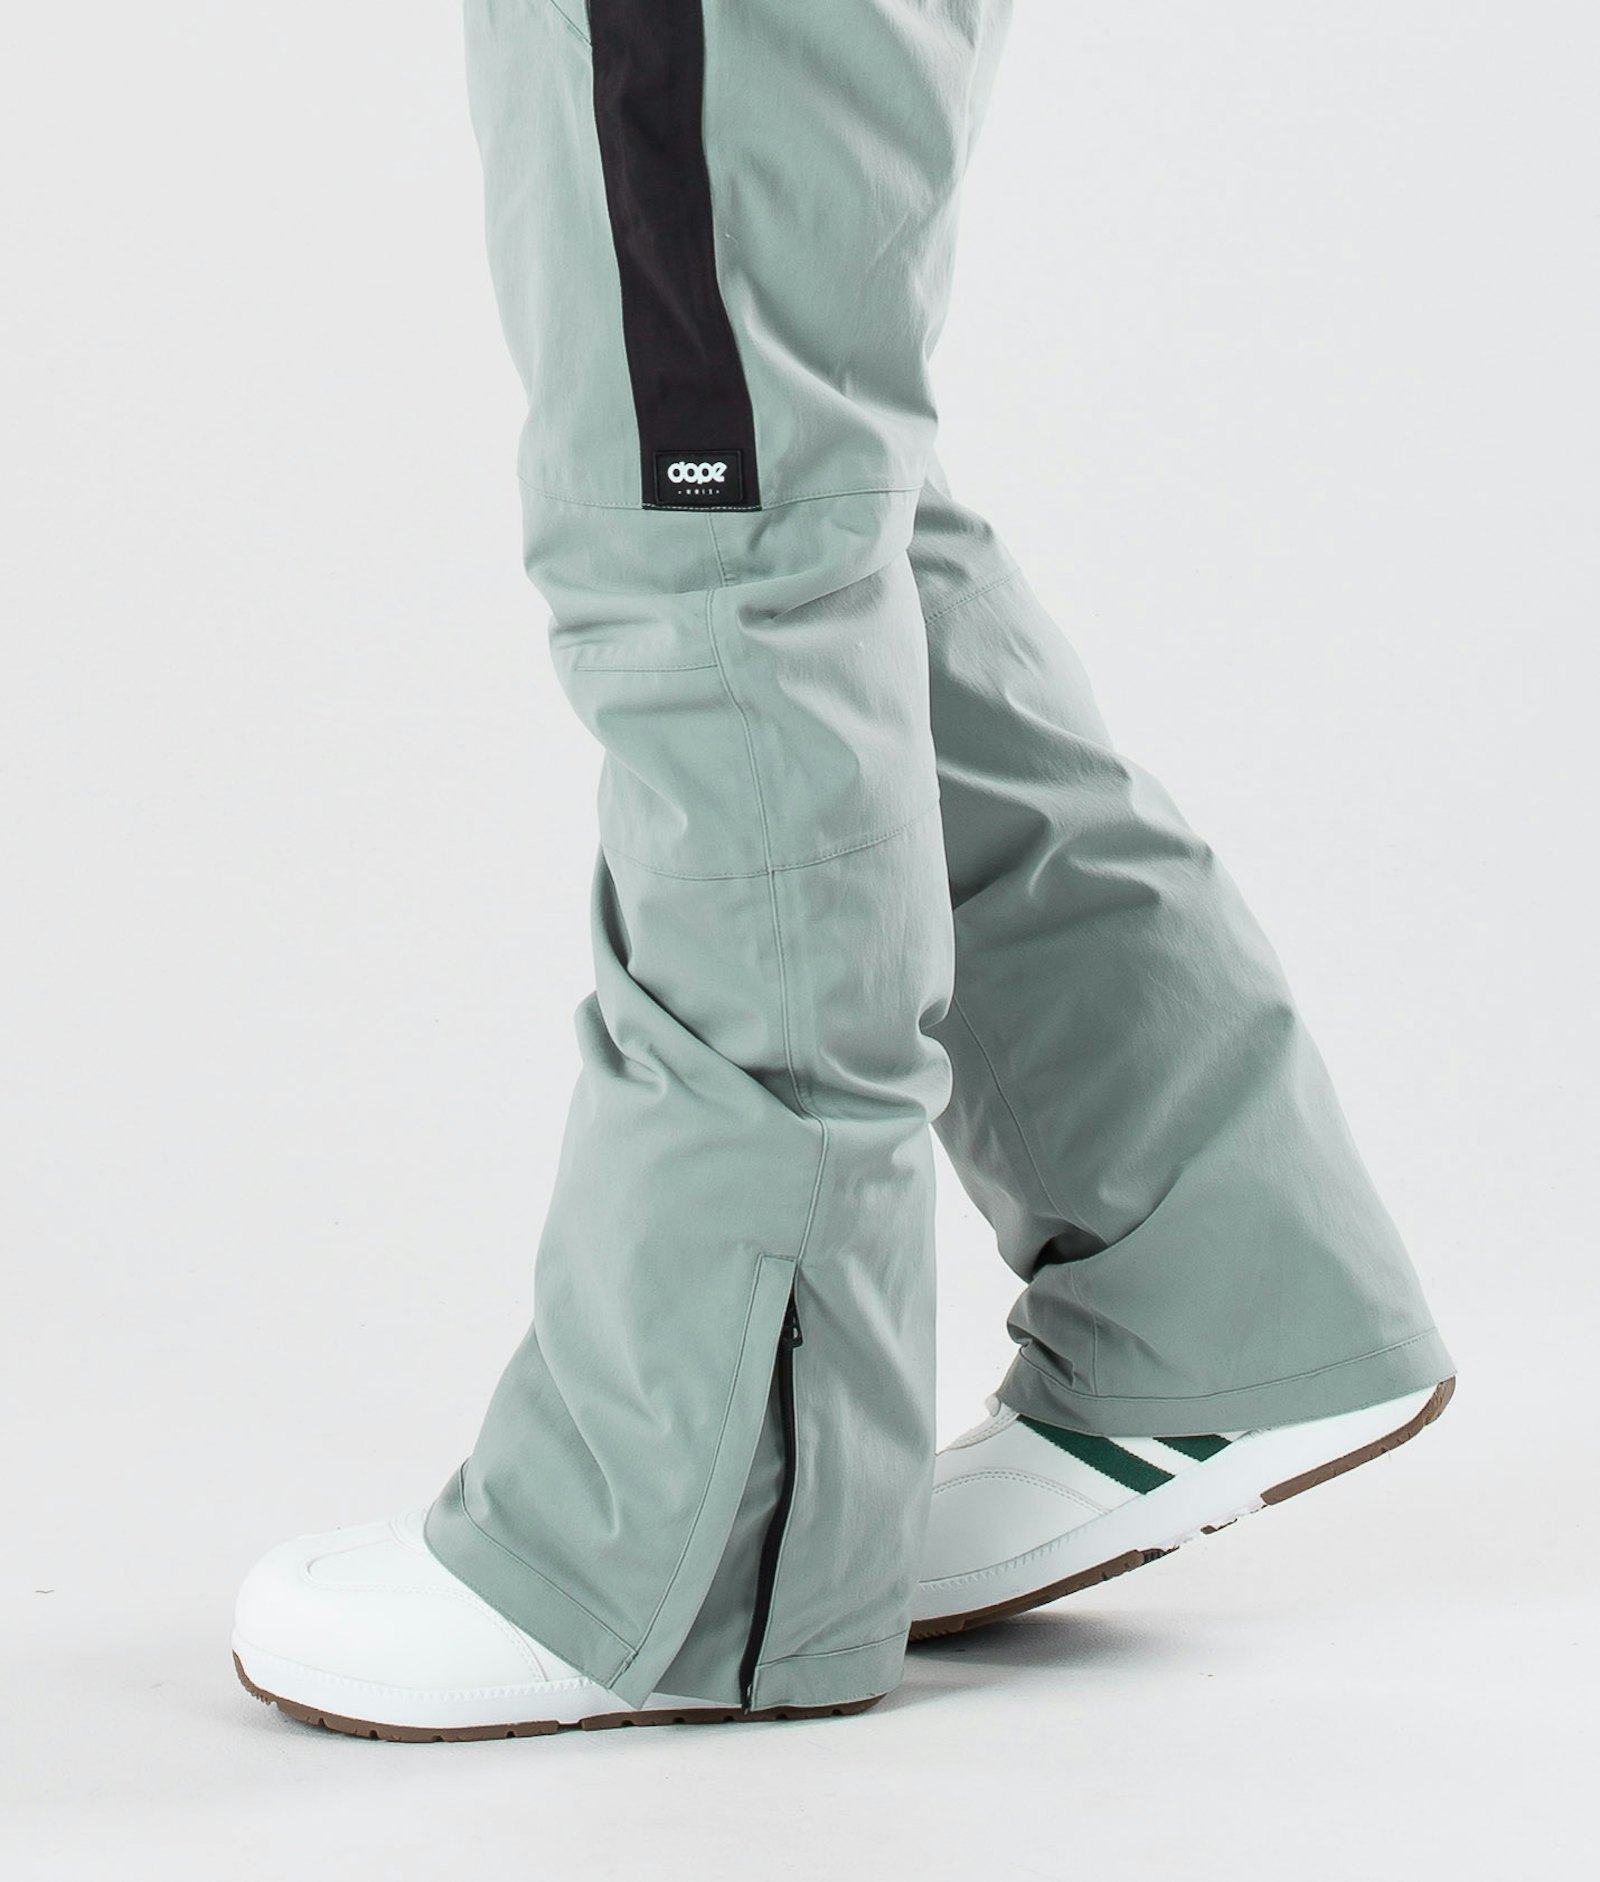 Dope Hoax II 2019 Pantalon de Snowboard Homme Dusty Green